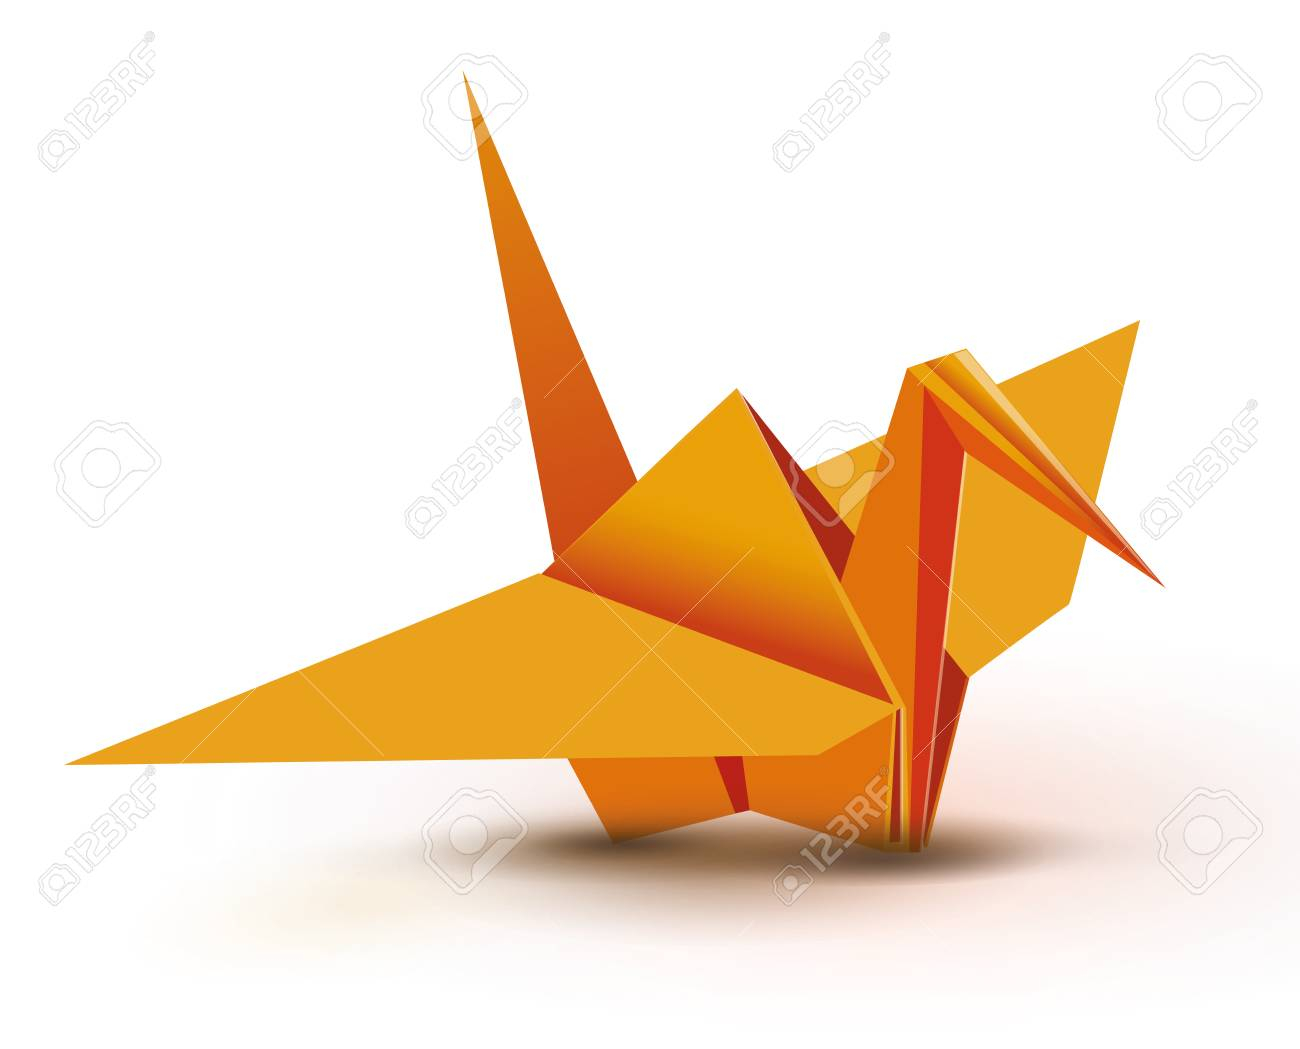 Origami Paper Crane Origami Origami Crane Orange Origami Crane Orange Paper Origami